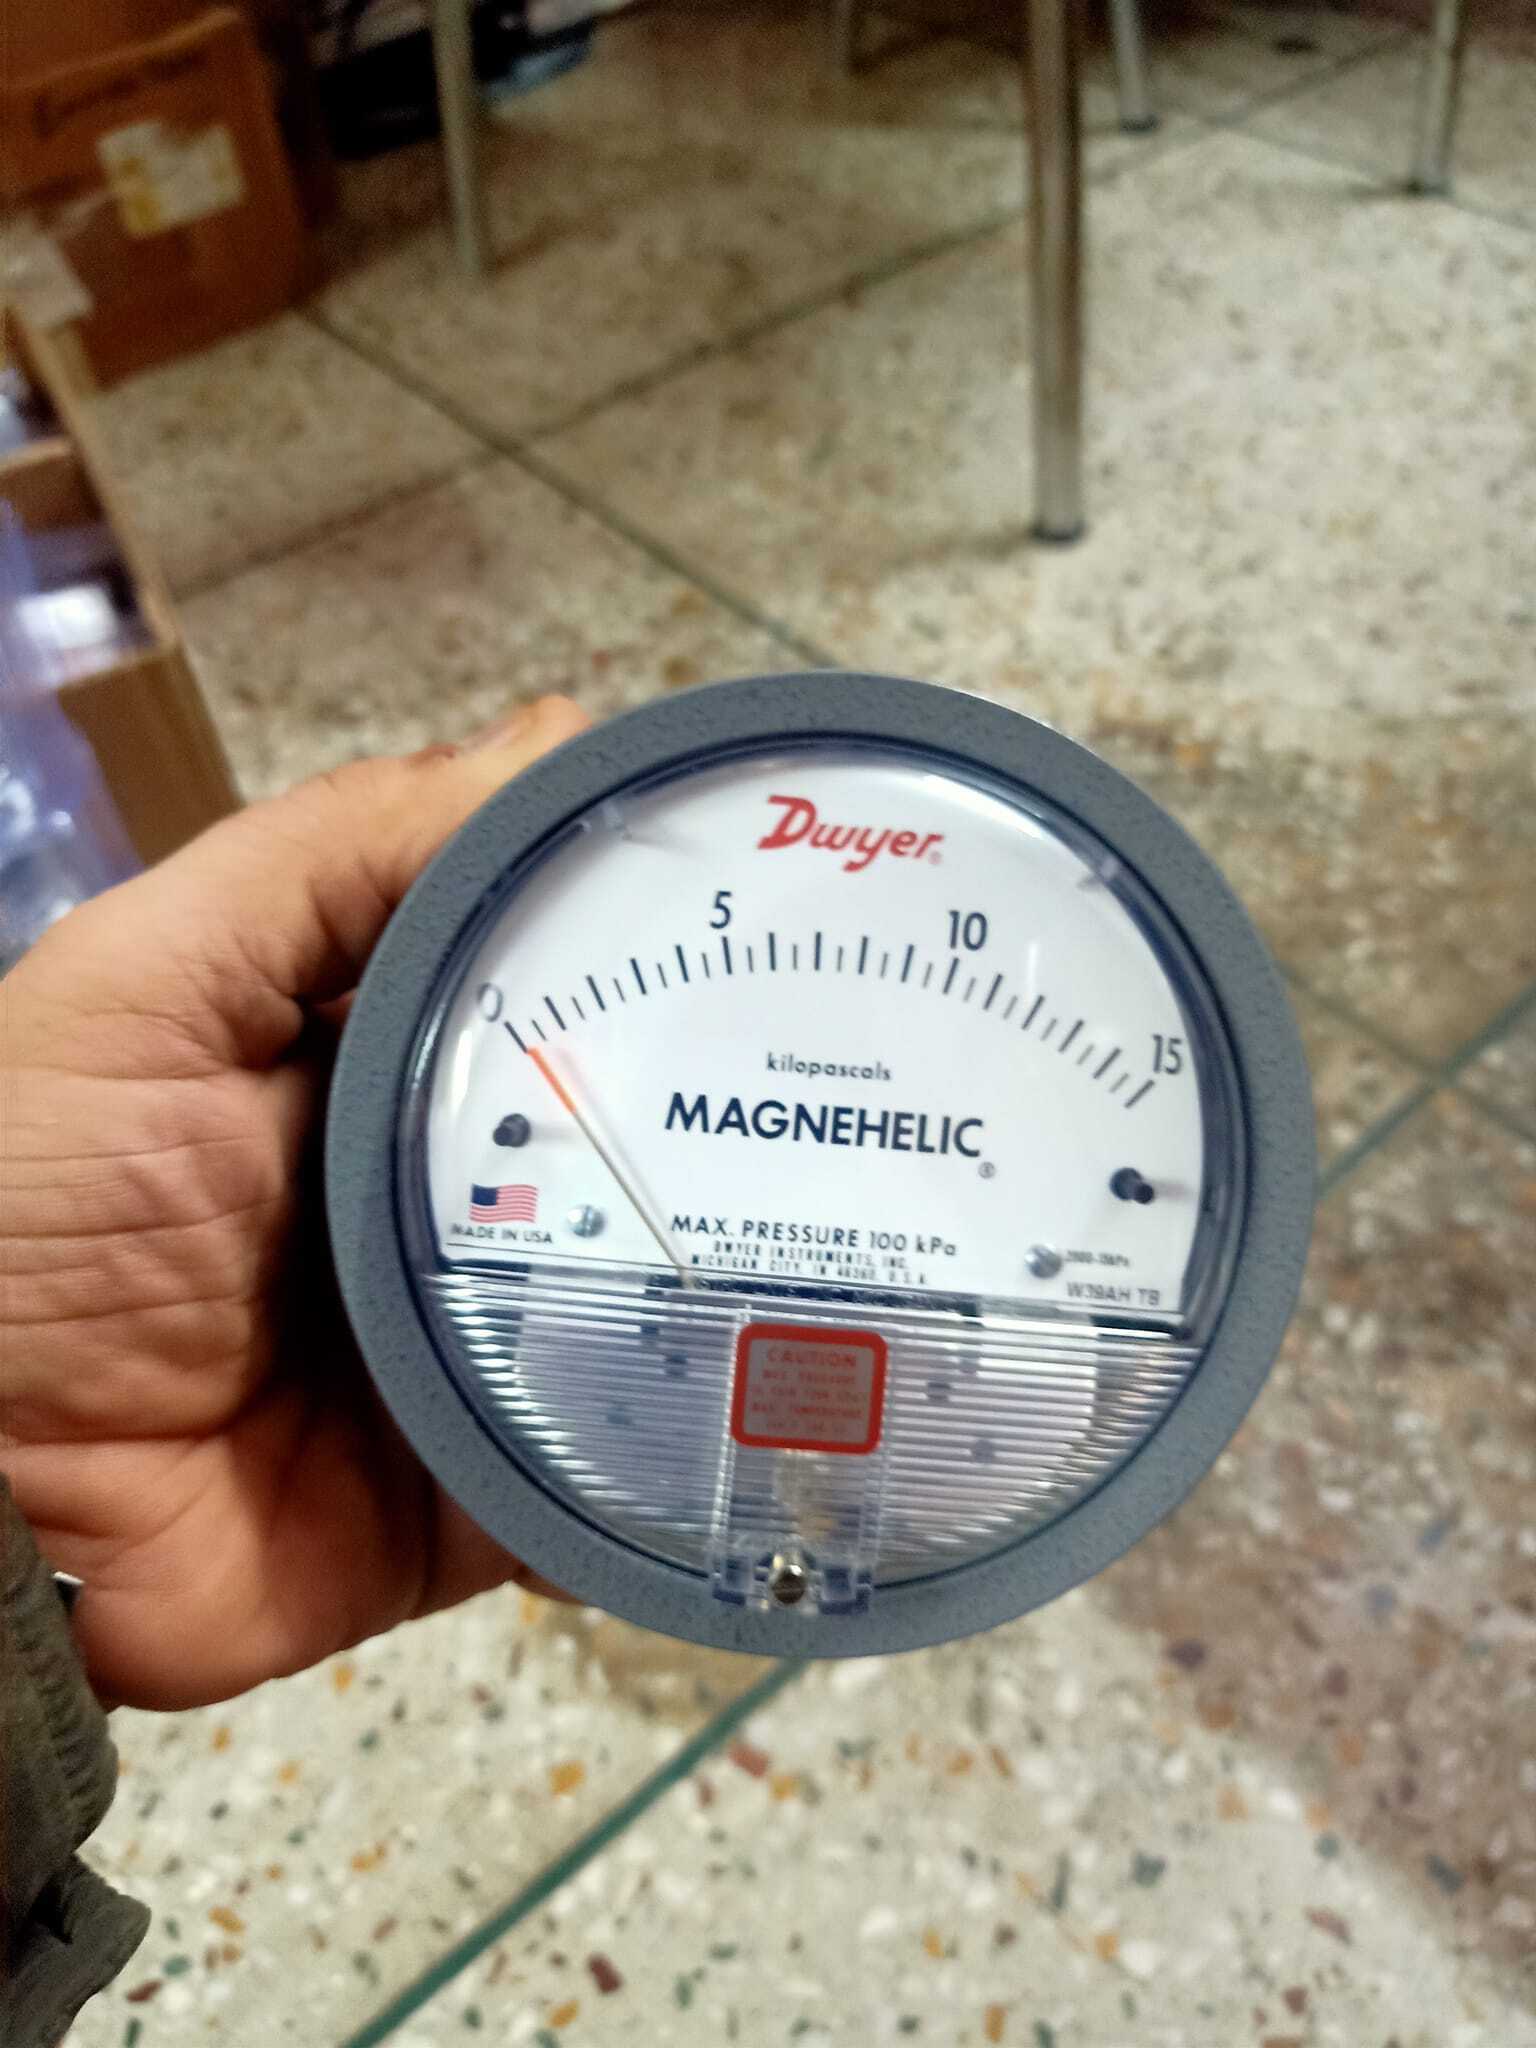 Dwyer Magnehelic Gauge Distributor In Thiruvananthapuram Kerala India